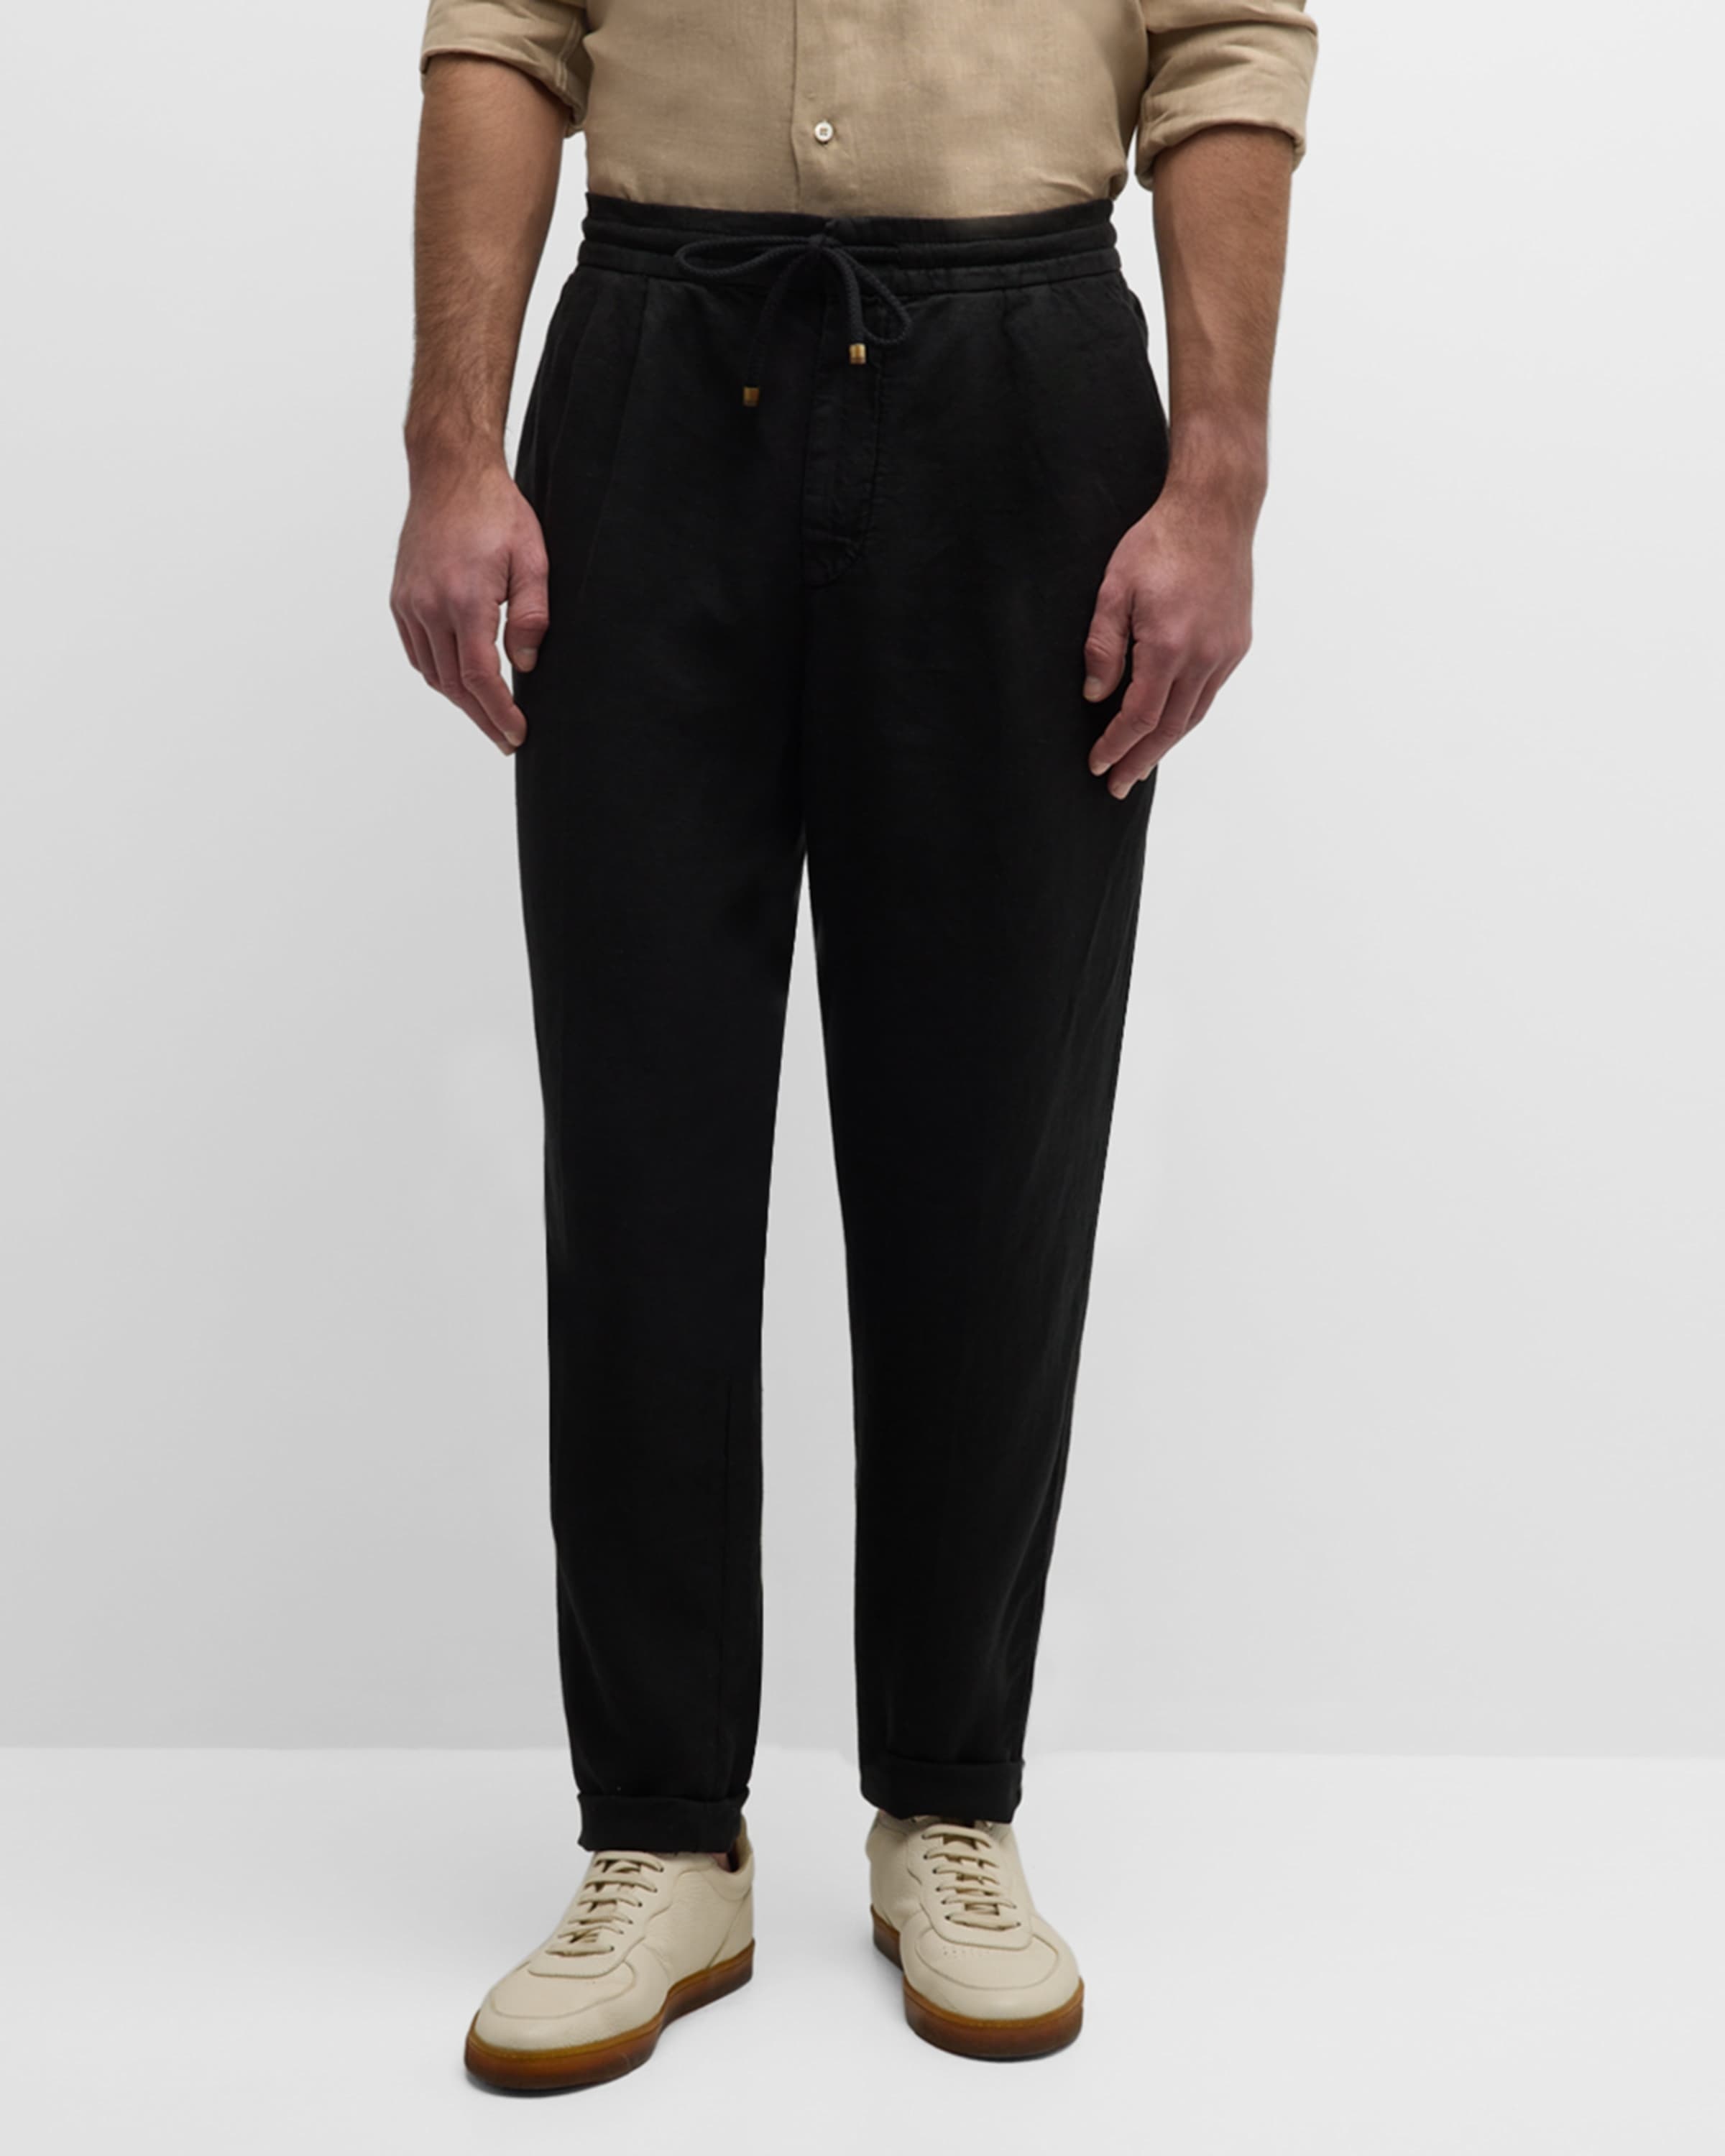 Men's Linen Leisure-Fit Drawstring Pants - 2